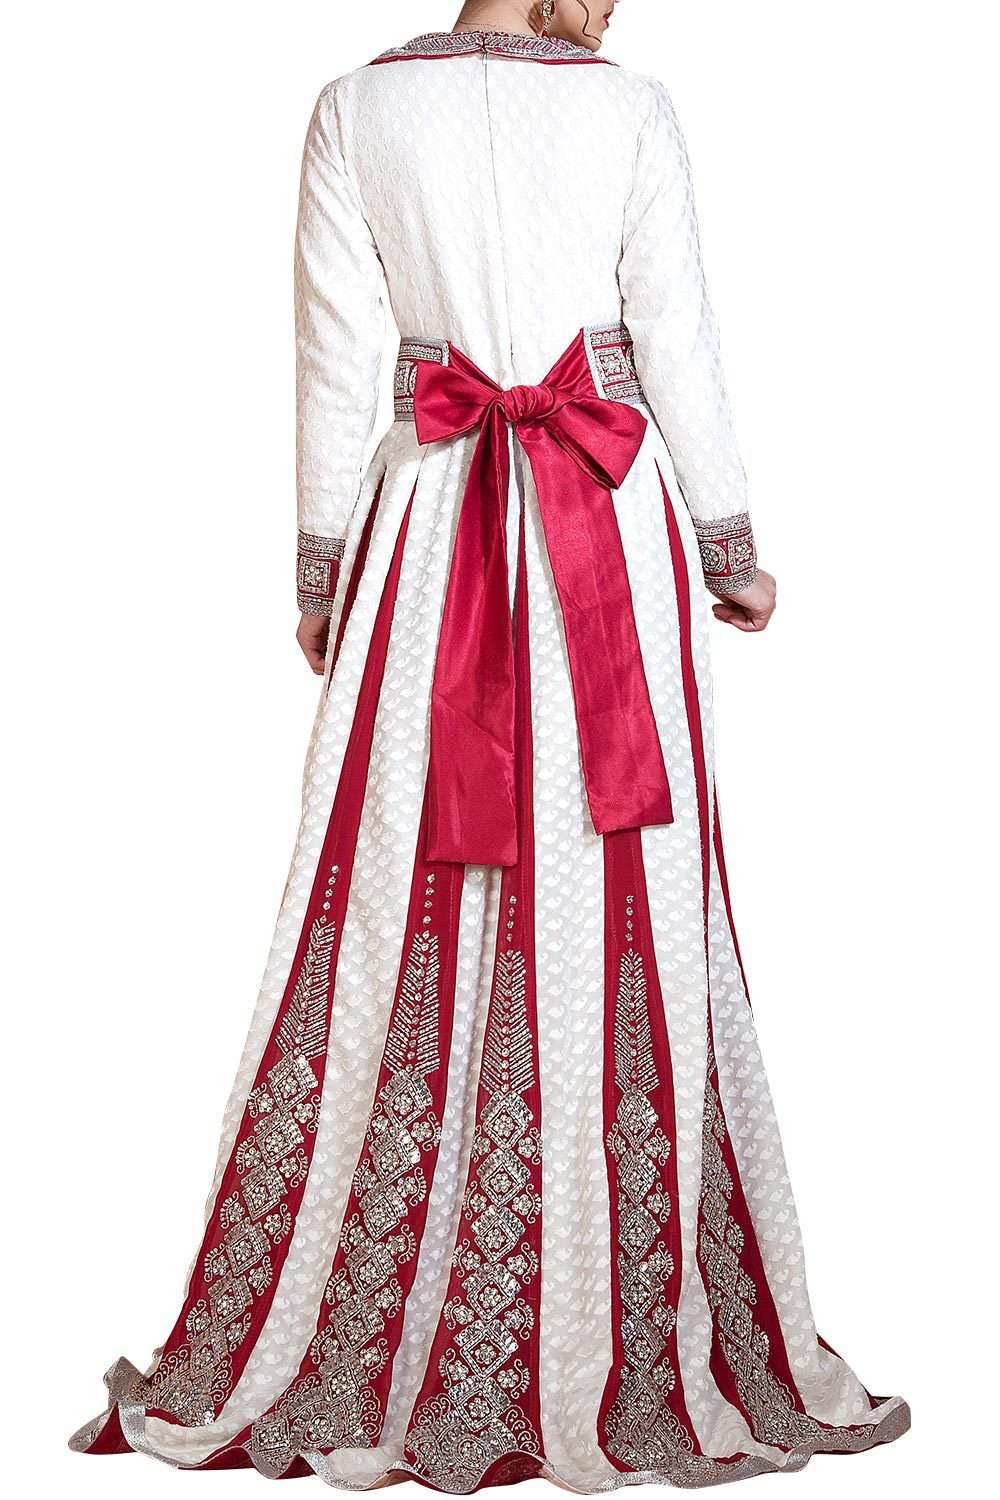 Neva Style - Elegant Plum Color Islamic Clothing Wedding Dress 3452MU -  Neva-style.com